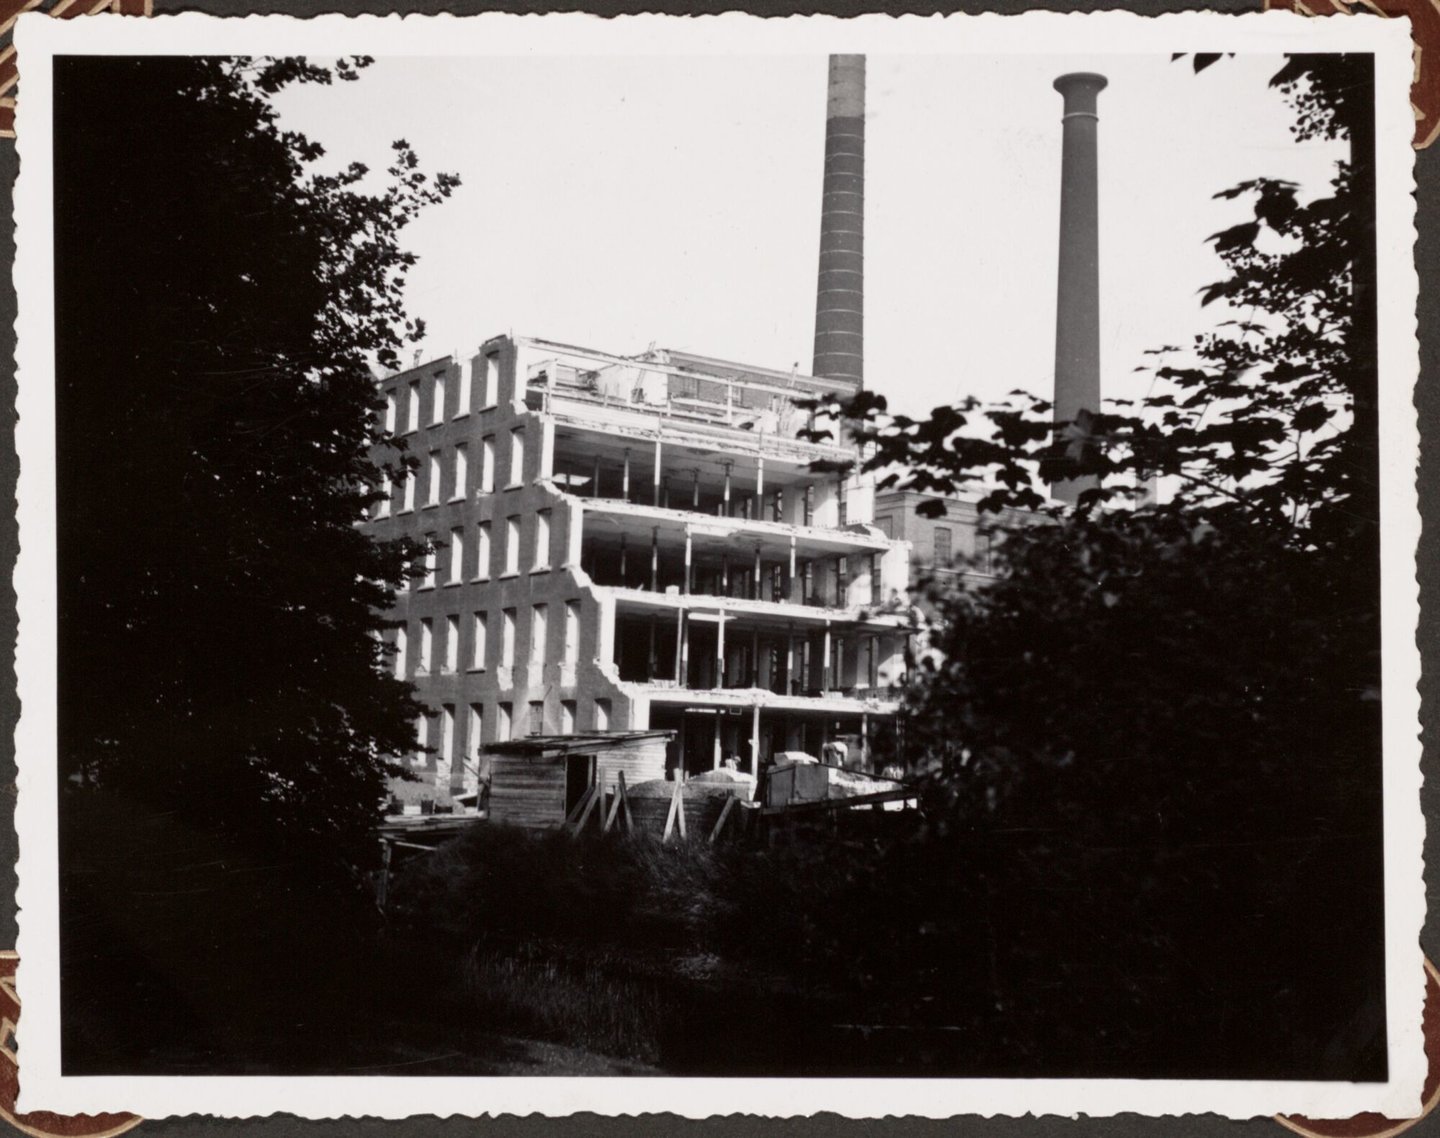 Afbraak van textielfabriek La Lys nv in Gent